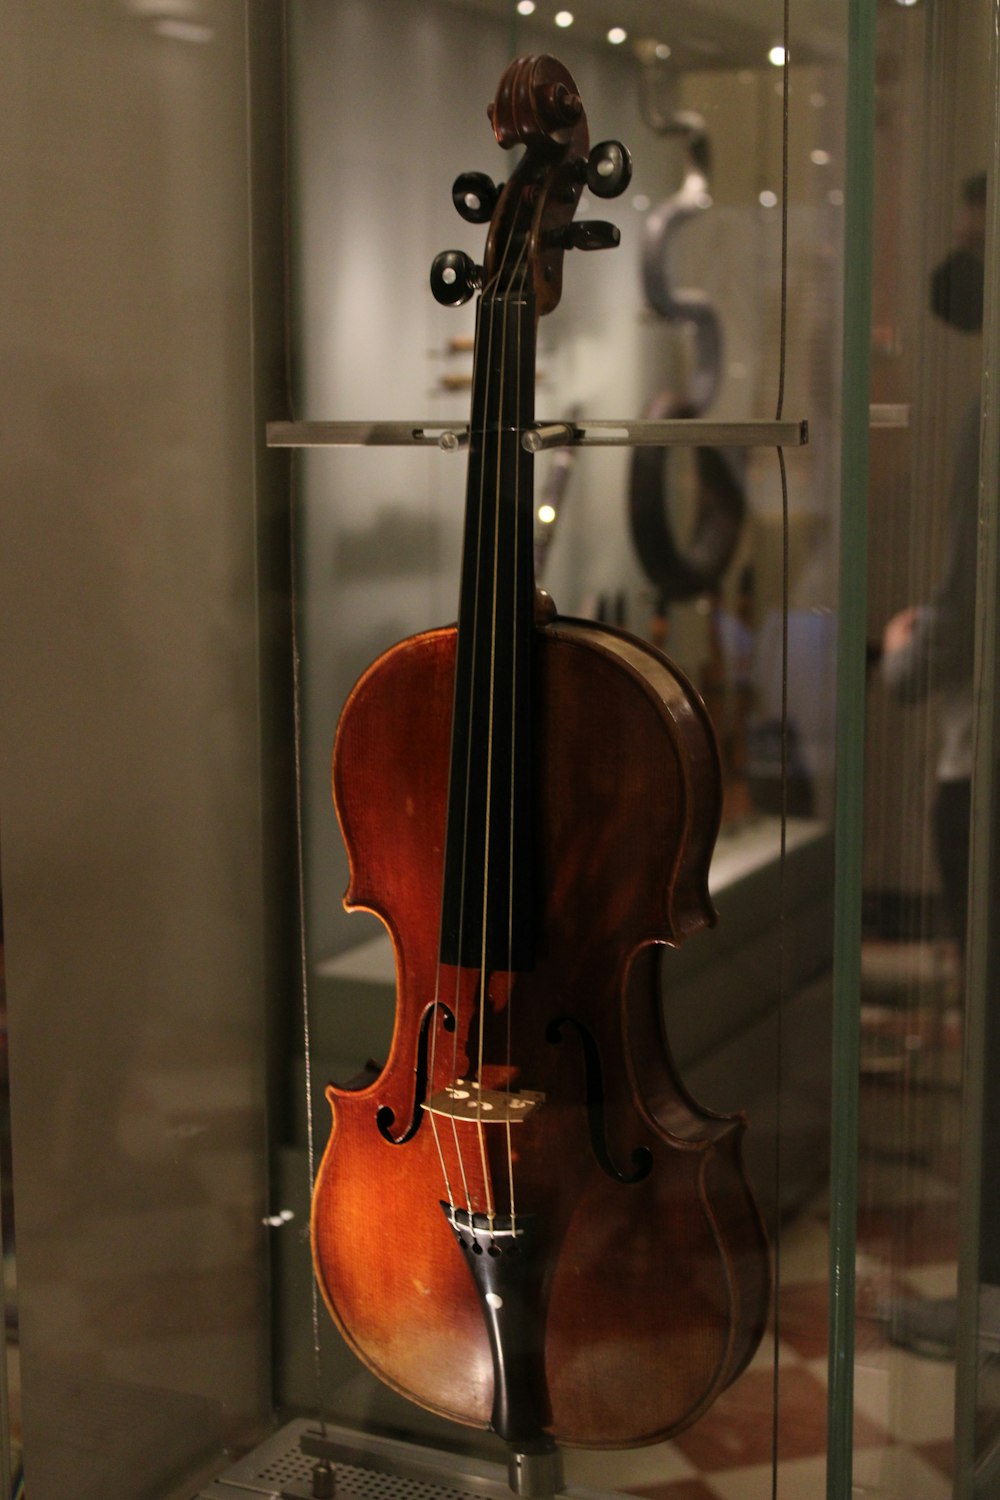 a violin in a case